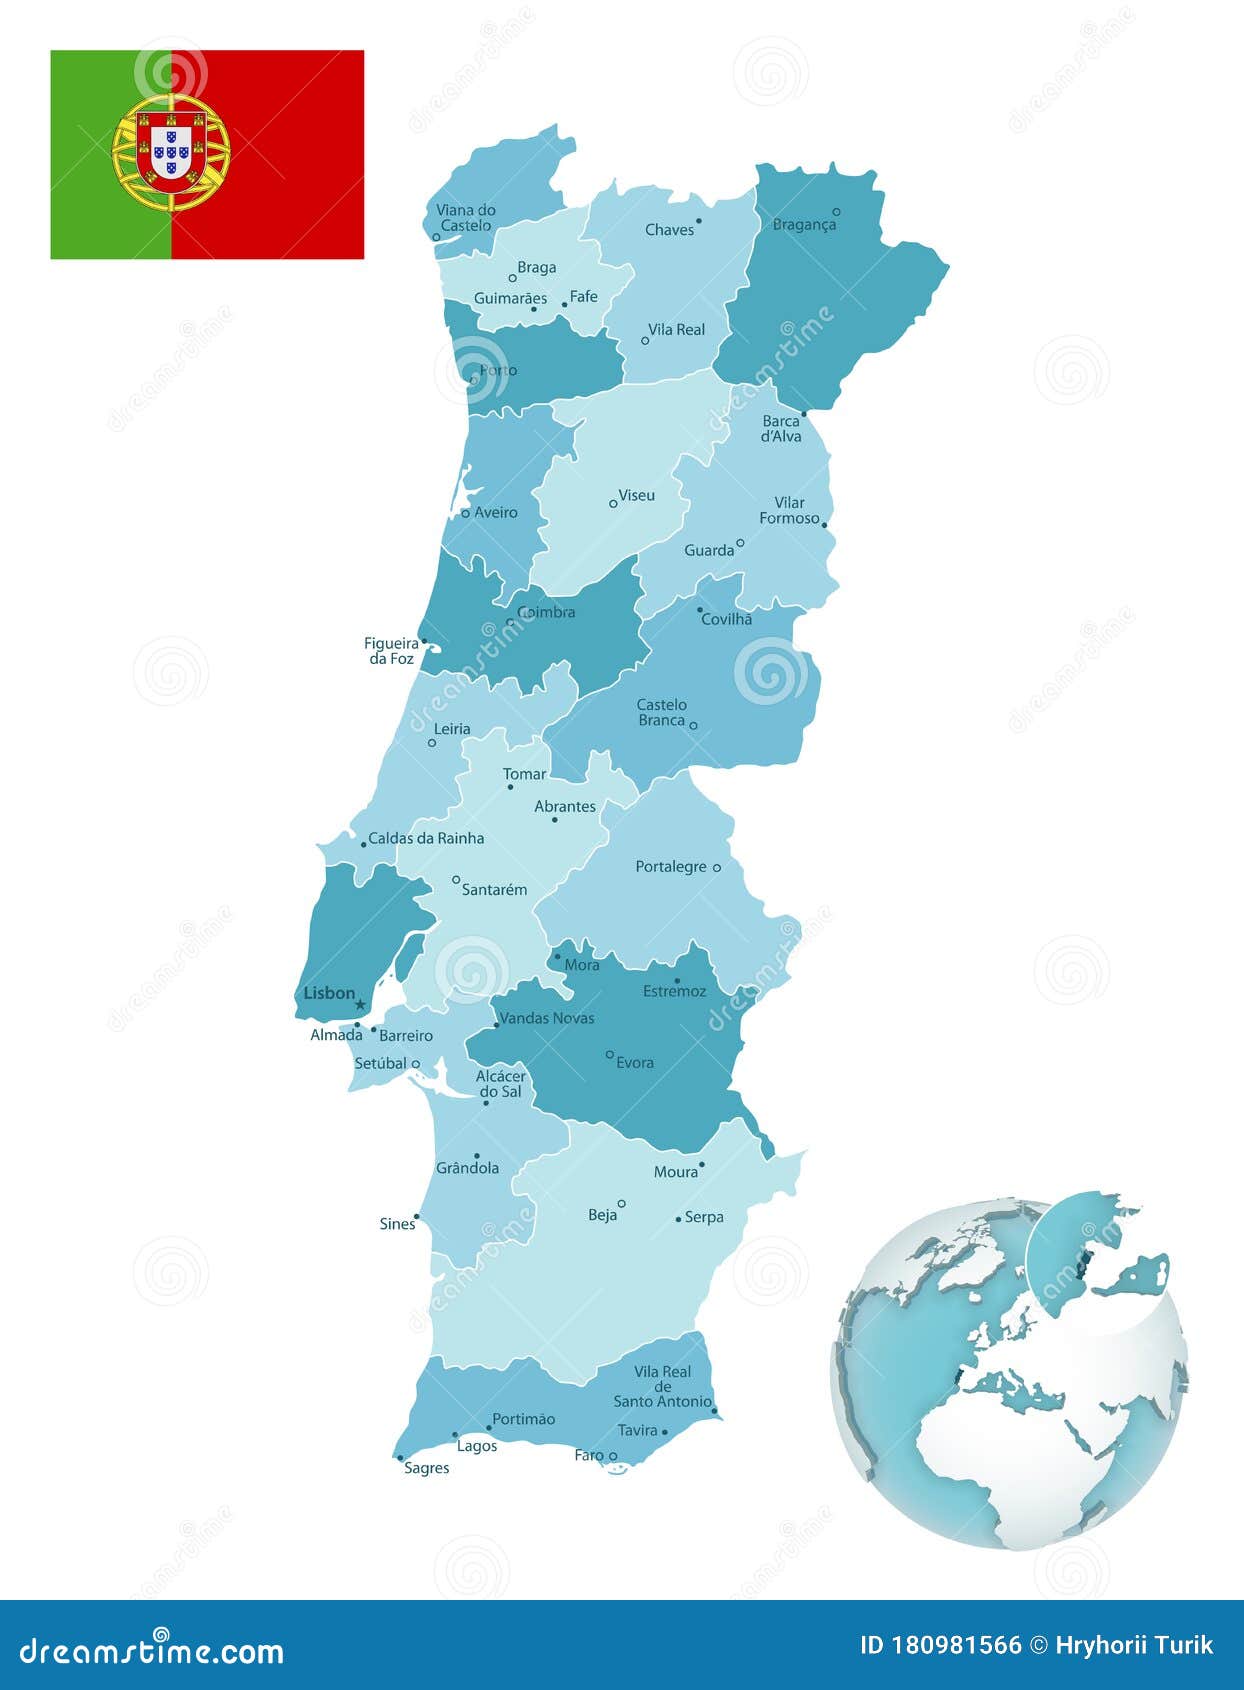 Portugal mapa ilustração vetorial detalhado mapa de portugal com regiões